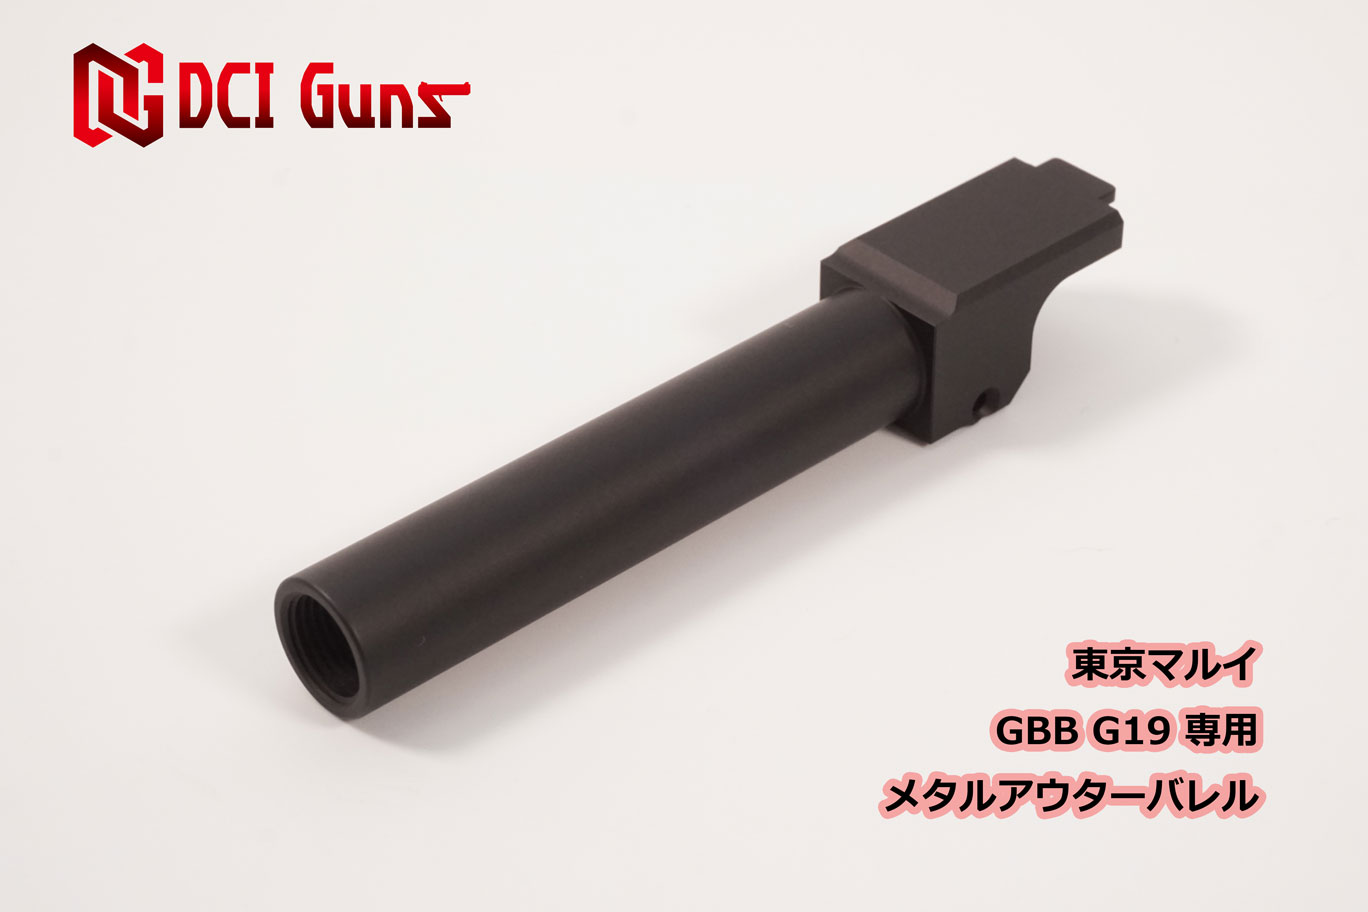 DCI-GBOB-006S　DCI Guns 11mm正ネジメタルアウターバレル マルイ M45A1/1911/MEU用 シルバー